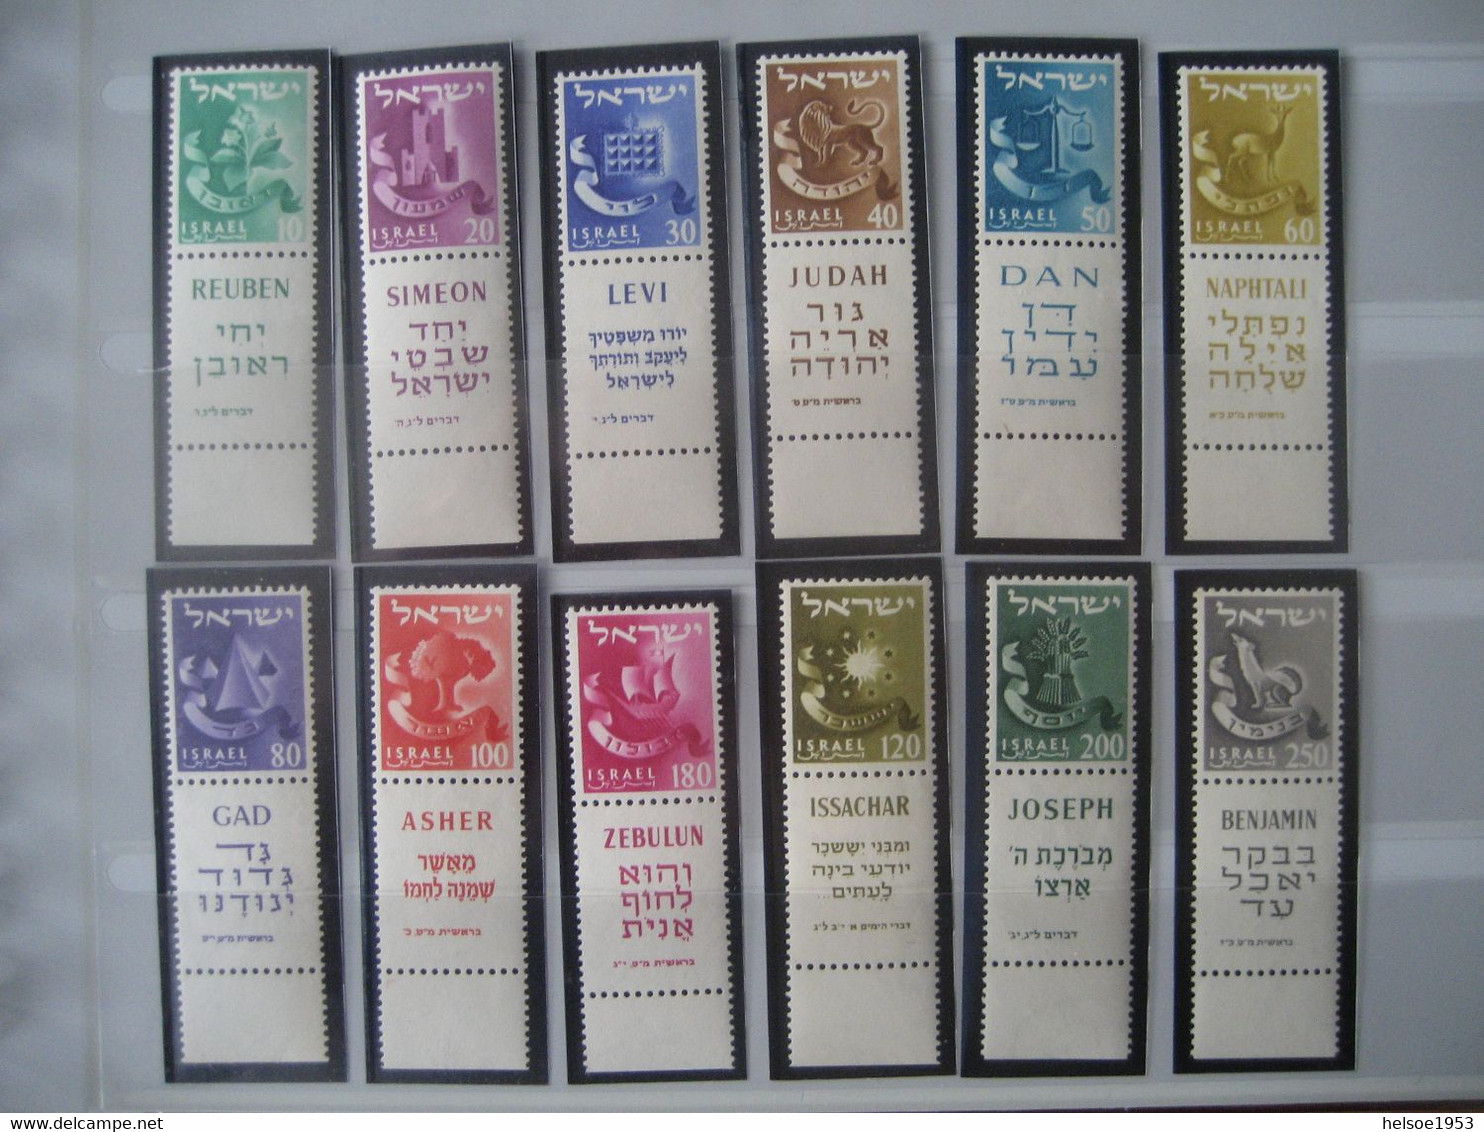 Israel- Sammlung von Briefmarken, Briefe, Karten, Blocks, Kleinbogen, Beschreibungen, Fotos im Safe Album